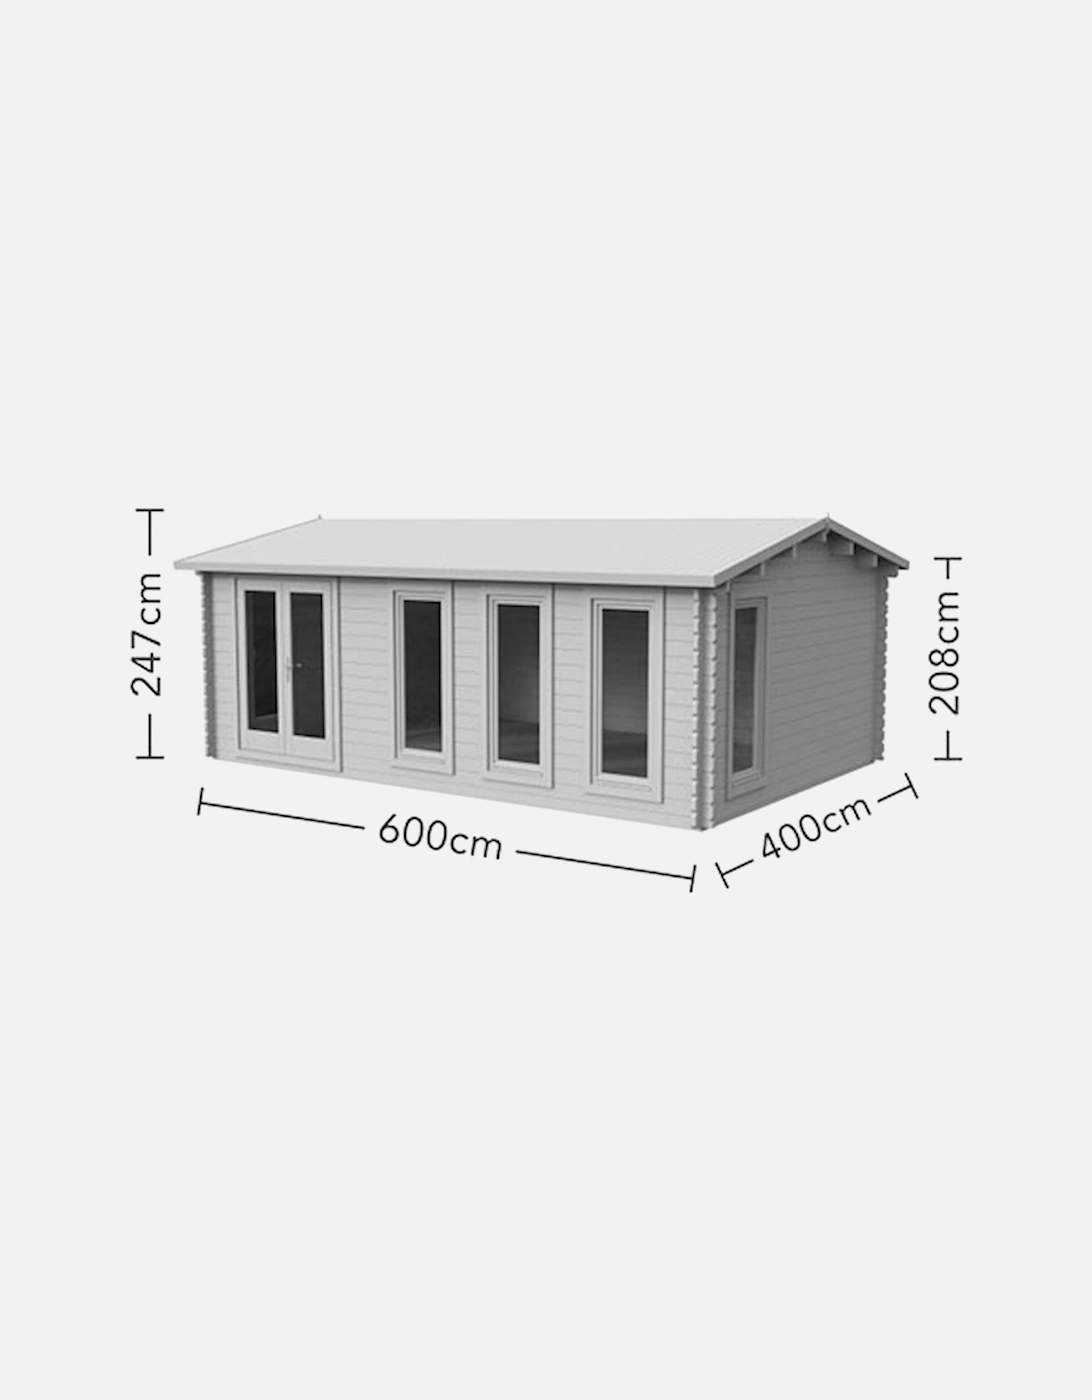 Garden Blakedown 6.0m x 4.0m Log Cabin - Apex Roof Double Glazed 34kg Polyester Felt Plus Underlay